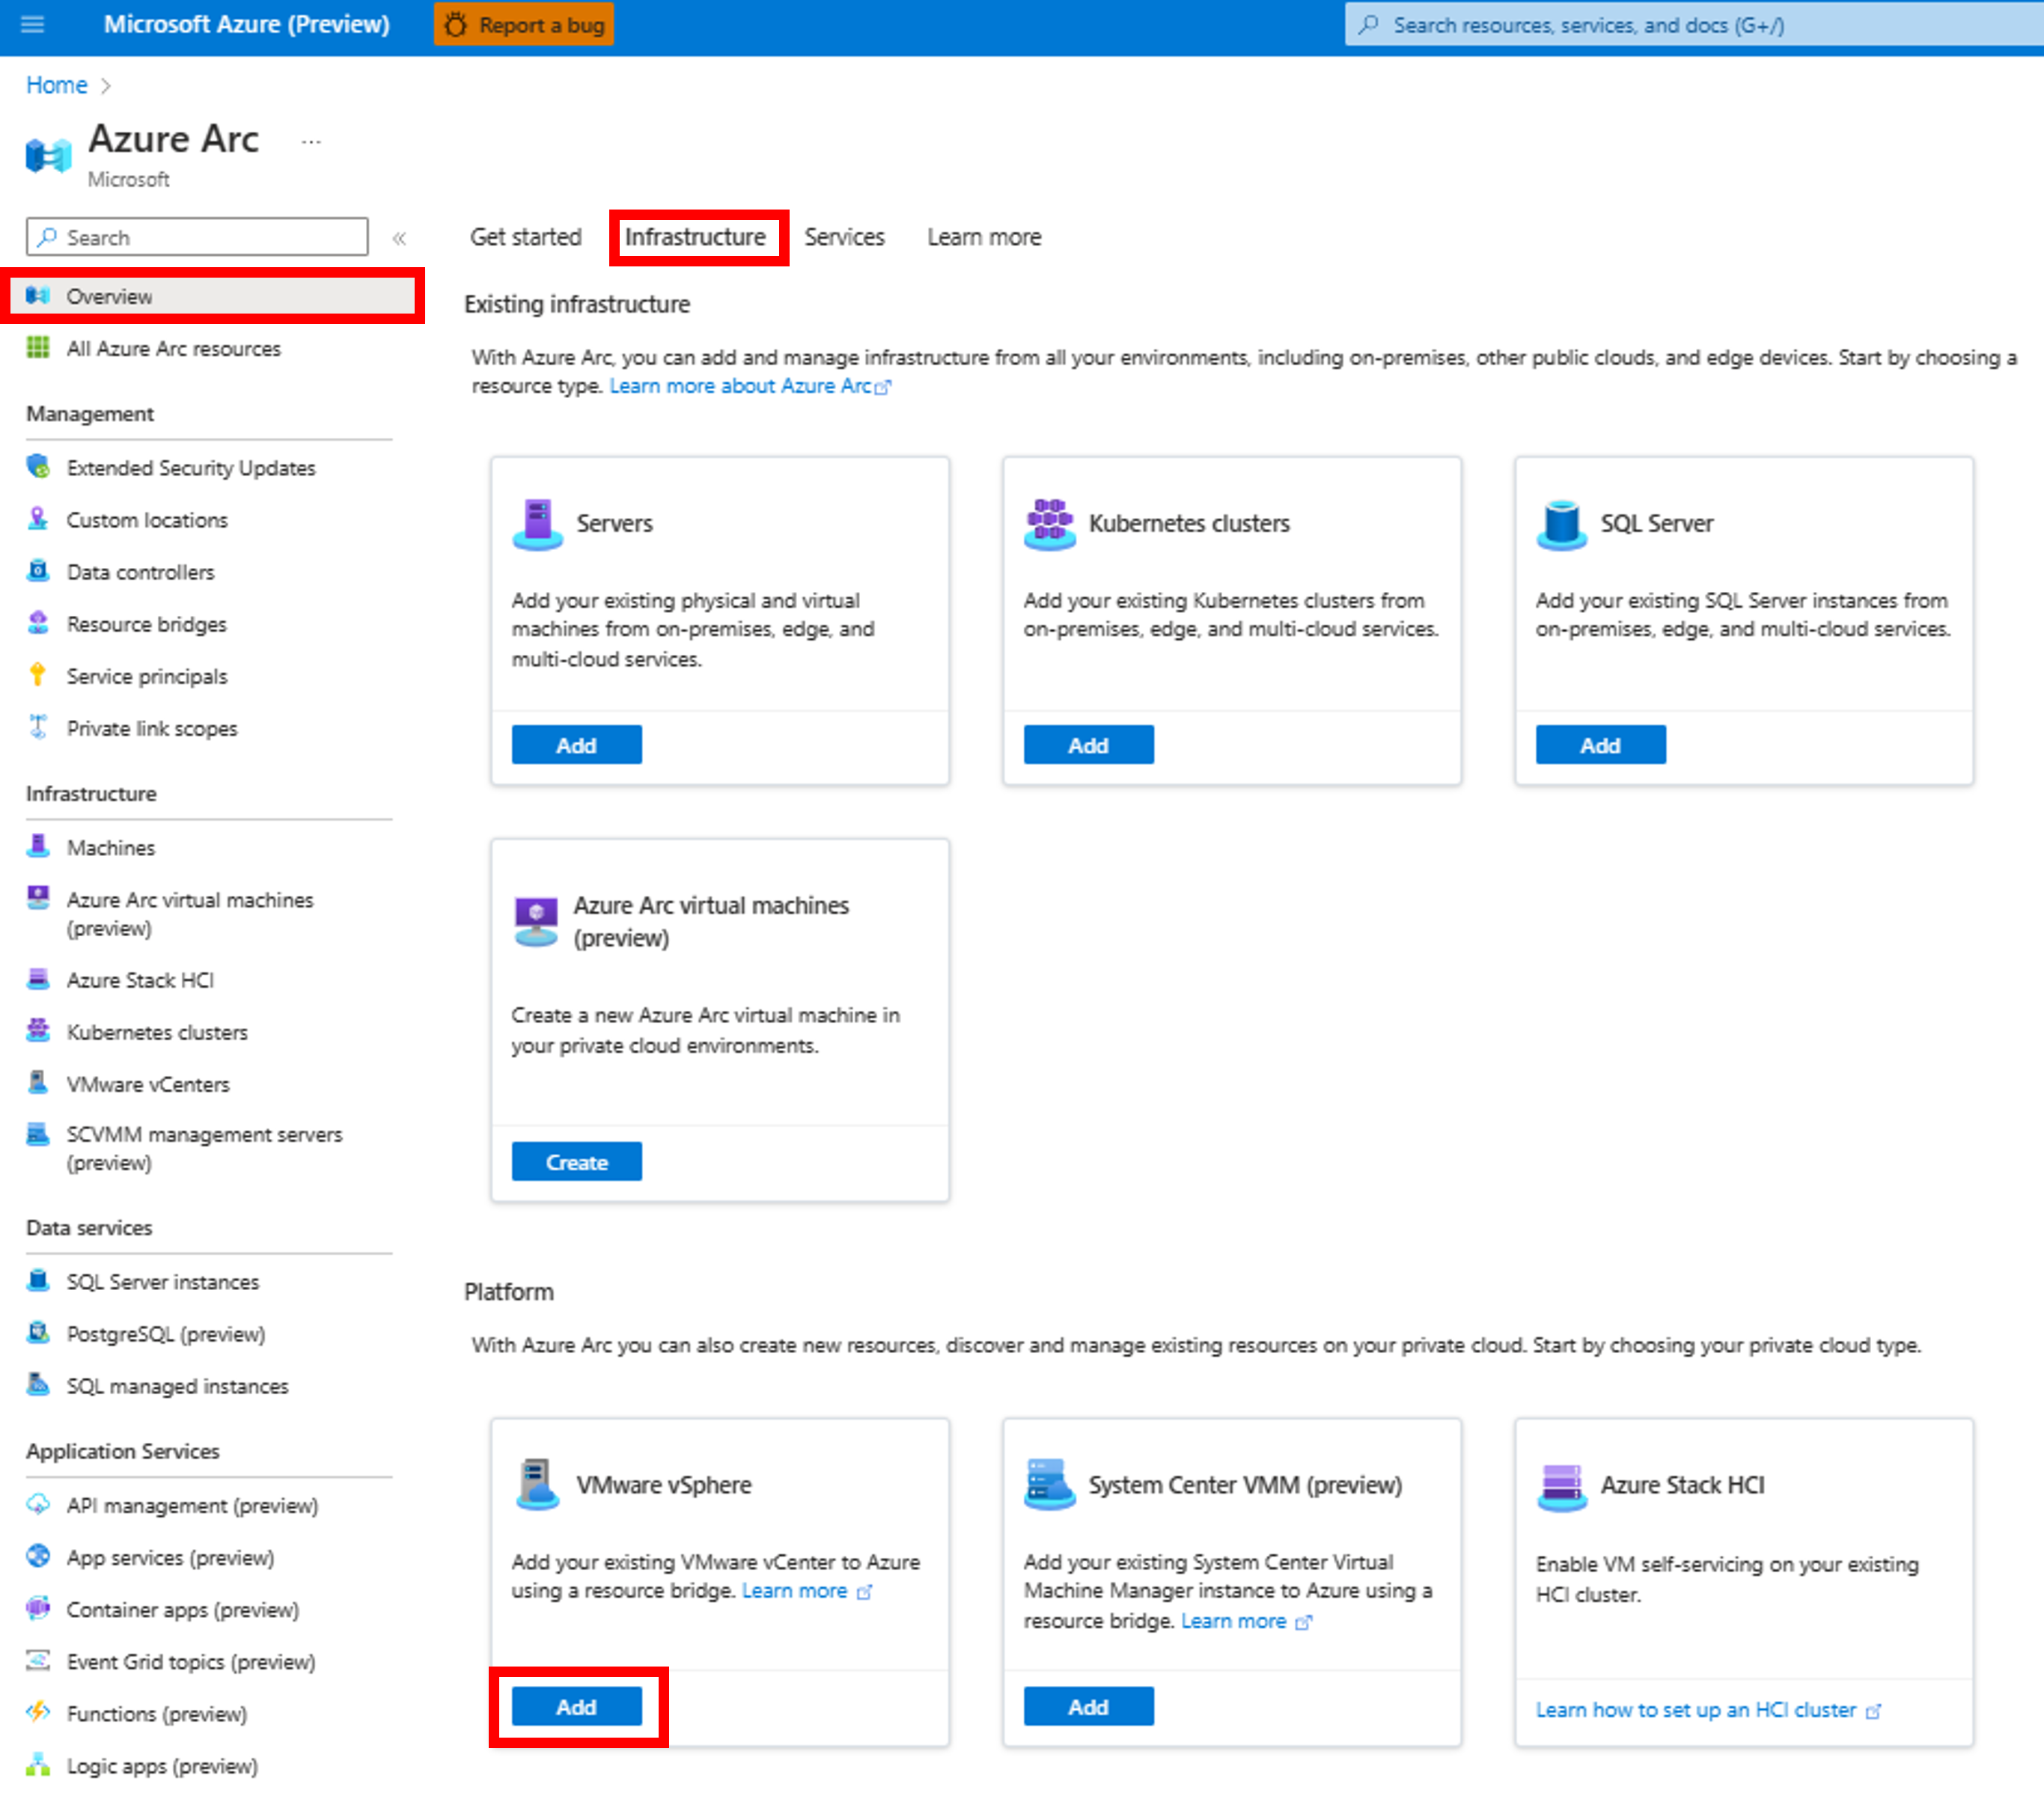 Captura de pantalla que muestra cómo agregar VMware vCenter mediante Azure Arc.